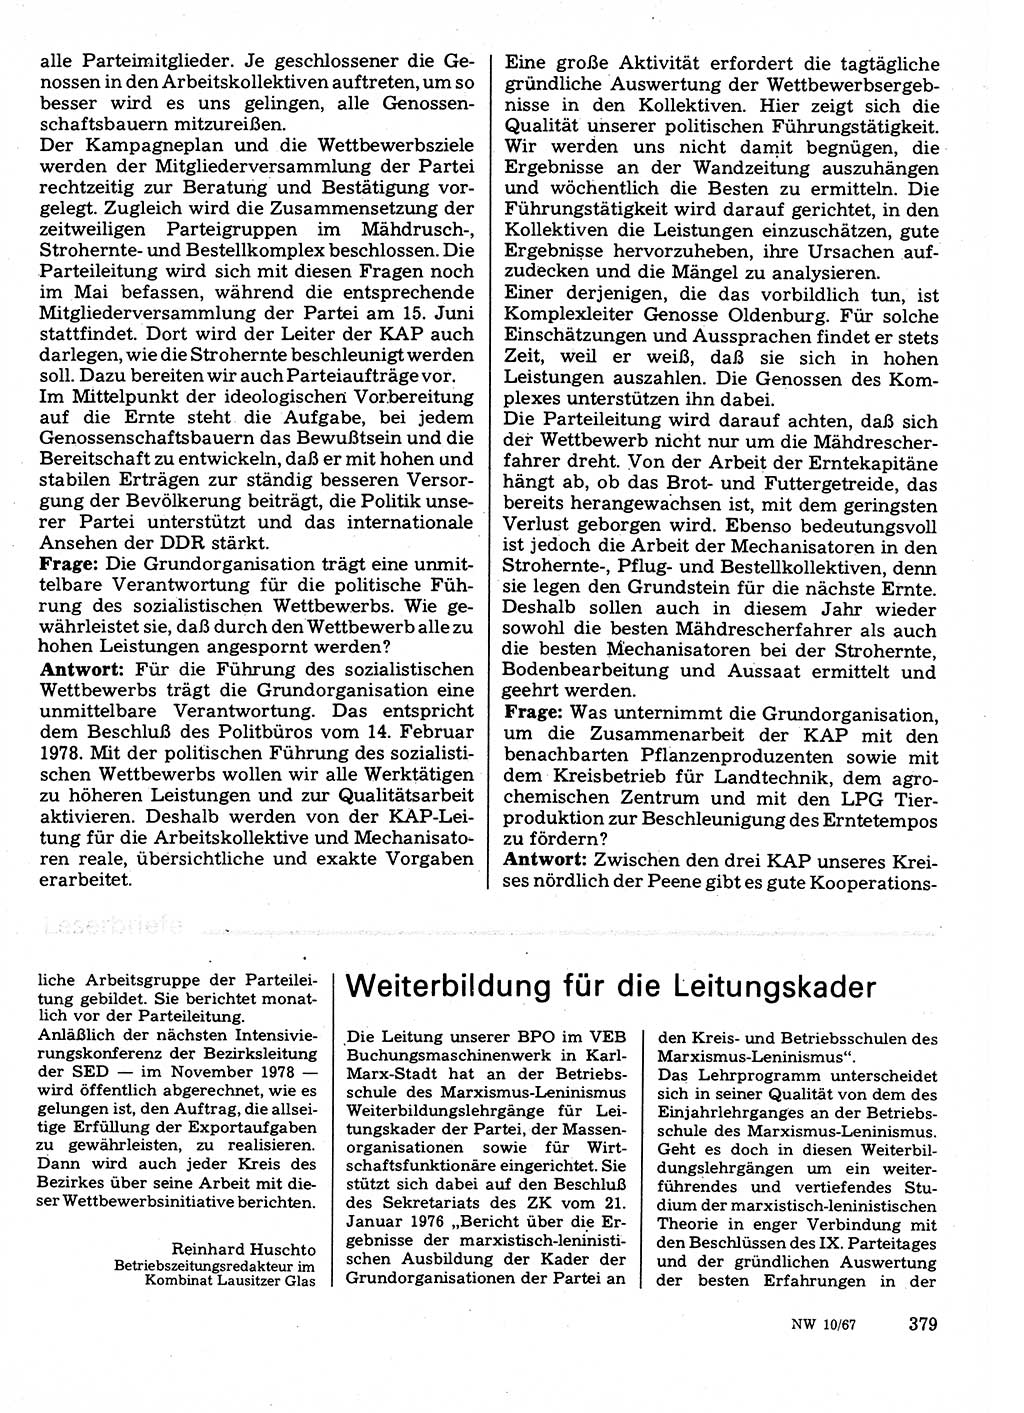 Neuer Weg (NW), Organ des Zentralkomitees (ZK) der SED (Sozialistische Einheitspartei Deutschlands) für Fragen des Parteilebens, 33. Jahrgang [Deutsche Demokratische Republik (DDR)] 1978, Seite 379 (NW ZK SED DDR 1978, S. 379)